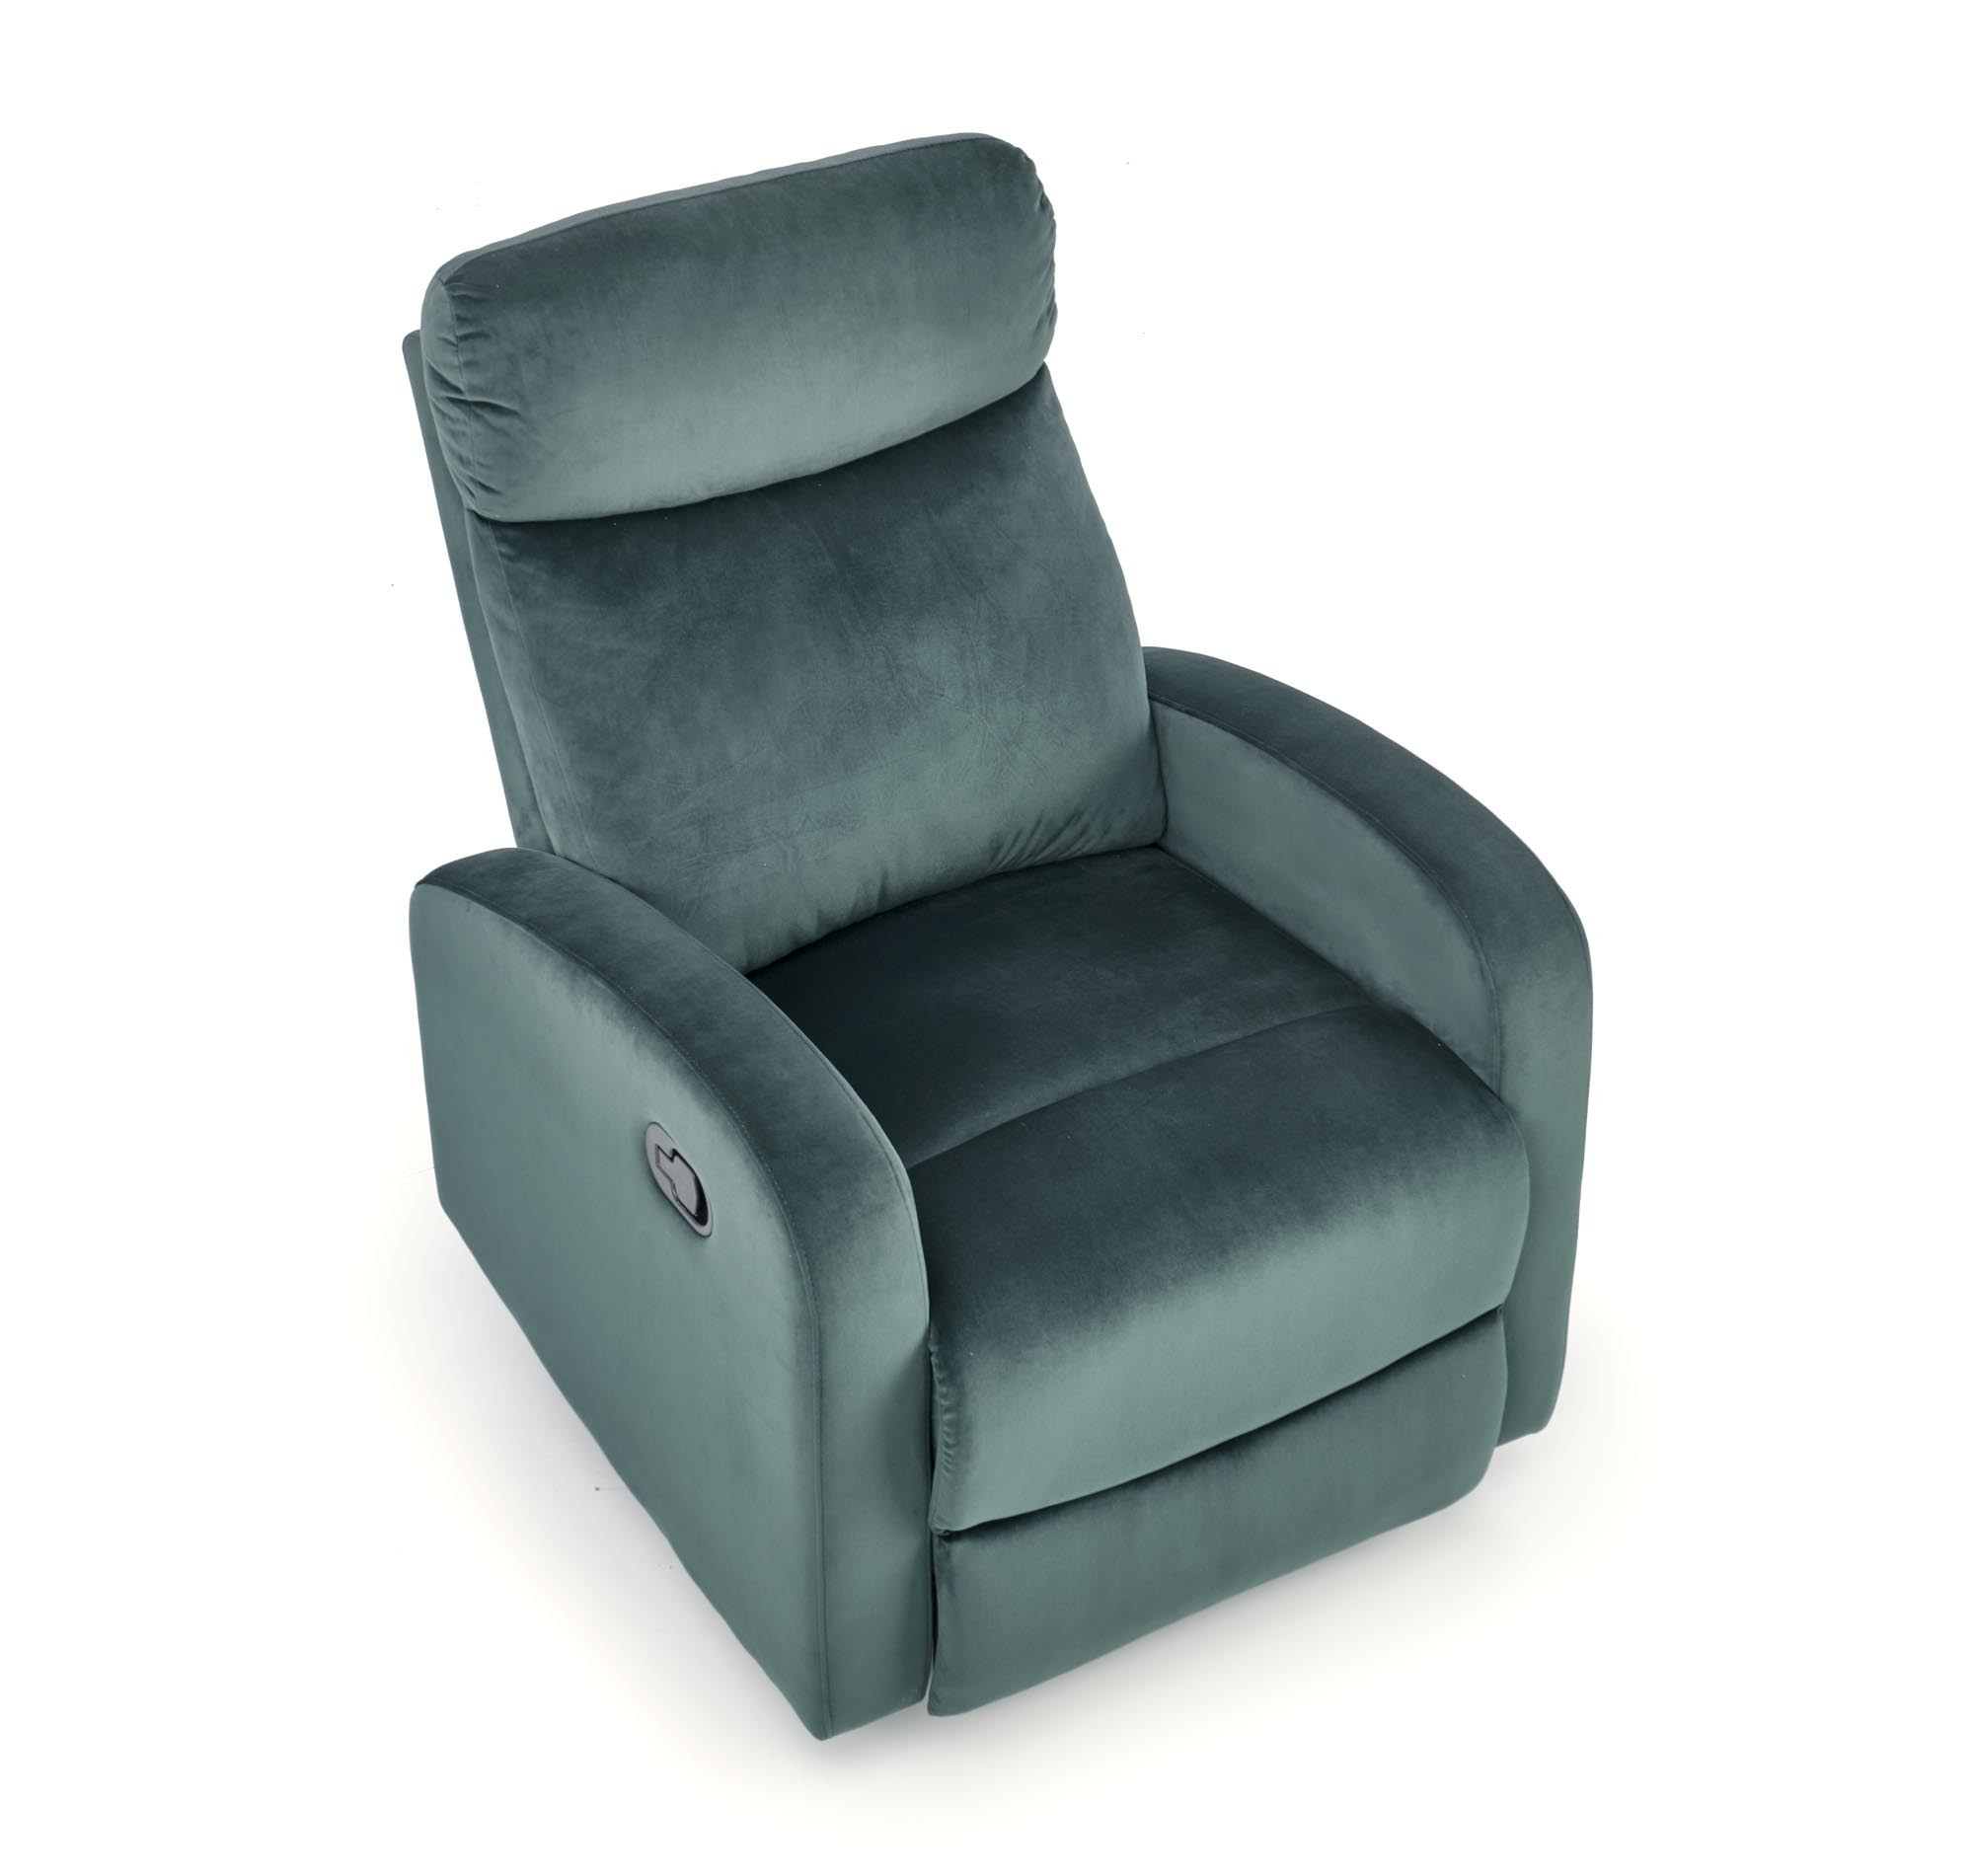 WONDER fotel rozkładany z funkcja kołyski, ciemno zielony